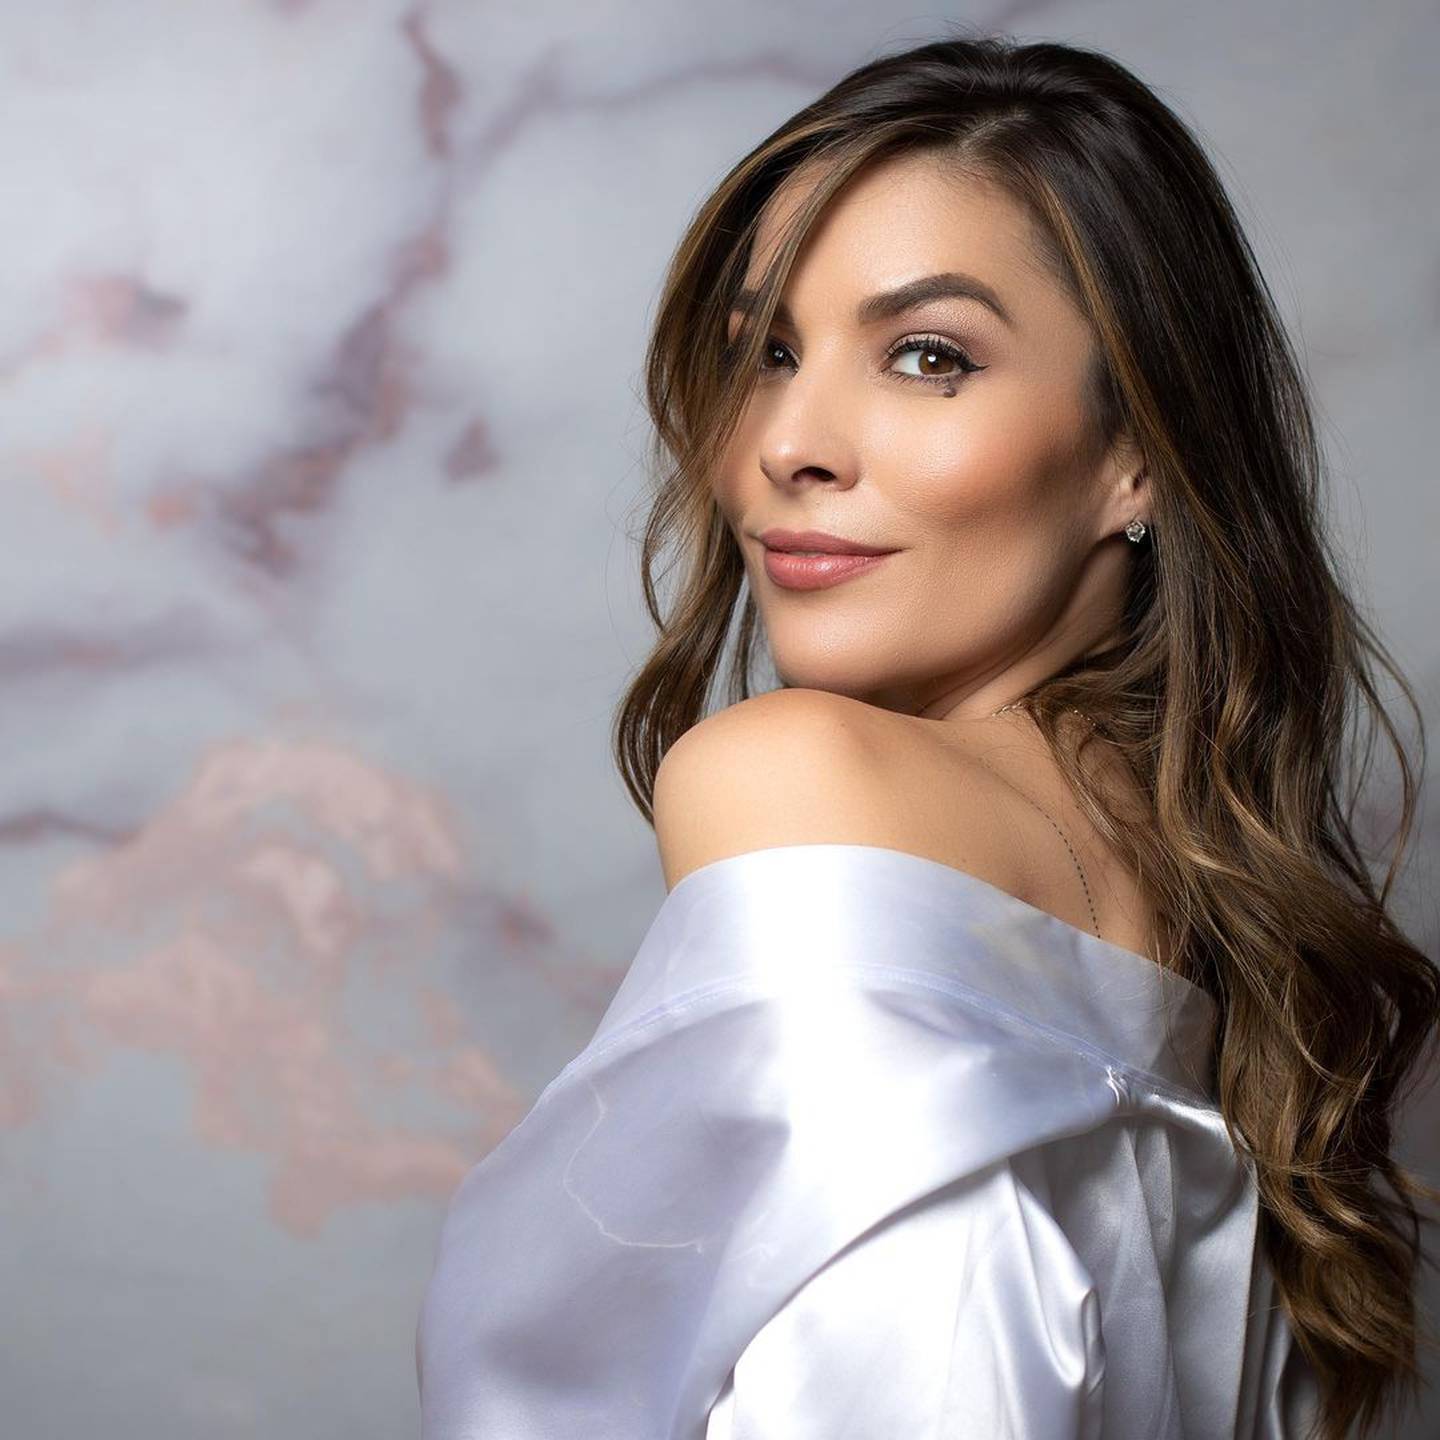 María Teresa Rodríguez es la nueva ficha de "7 Estrellas", estará presentando el programa junto a Walter Campos. Foto tomada de Instagram.